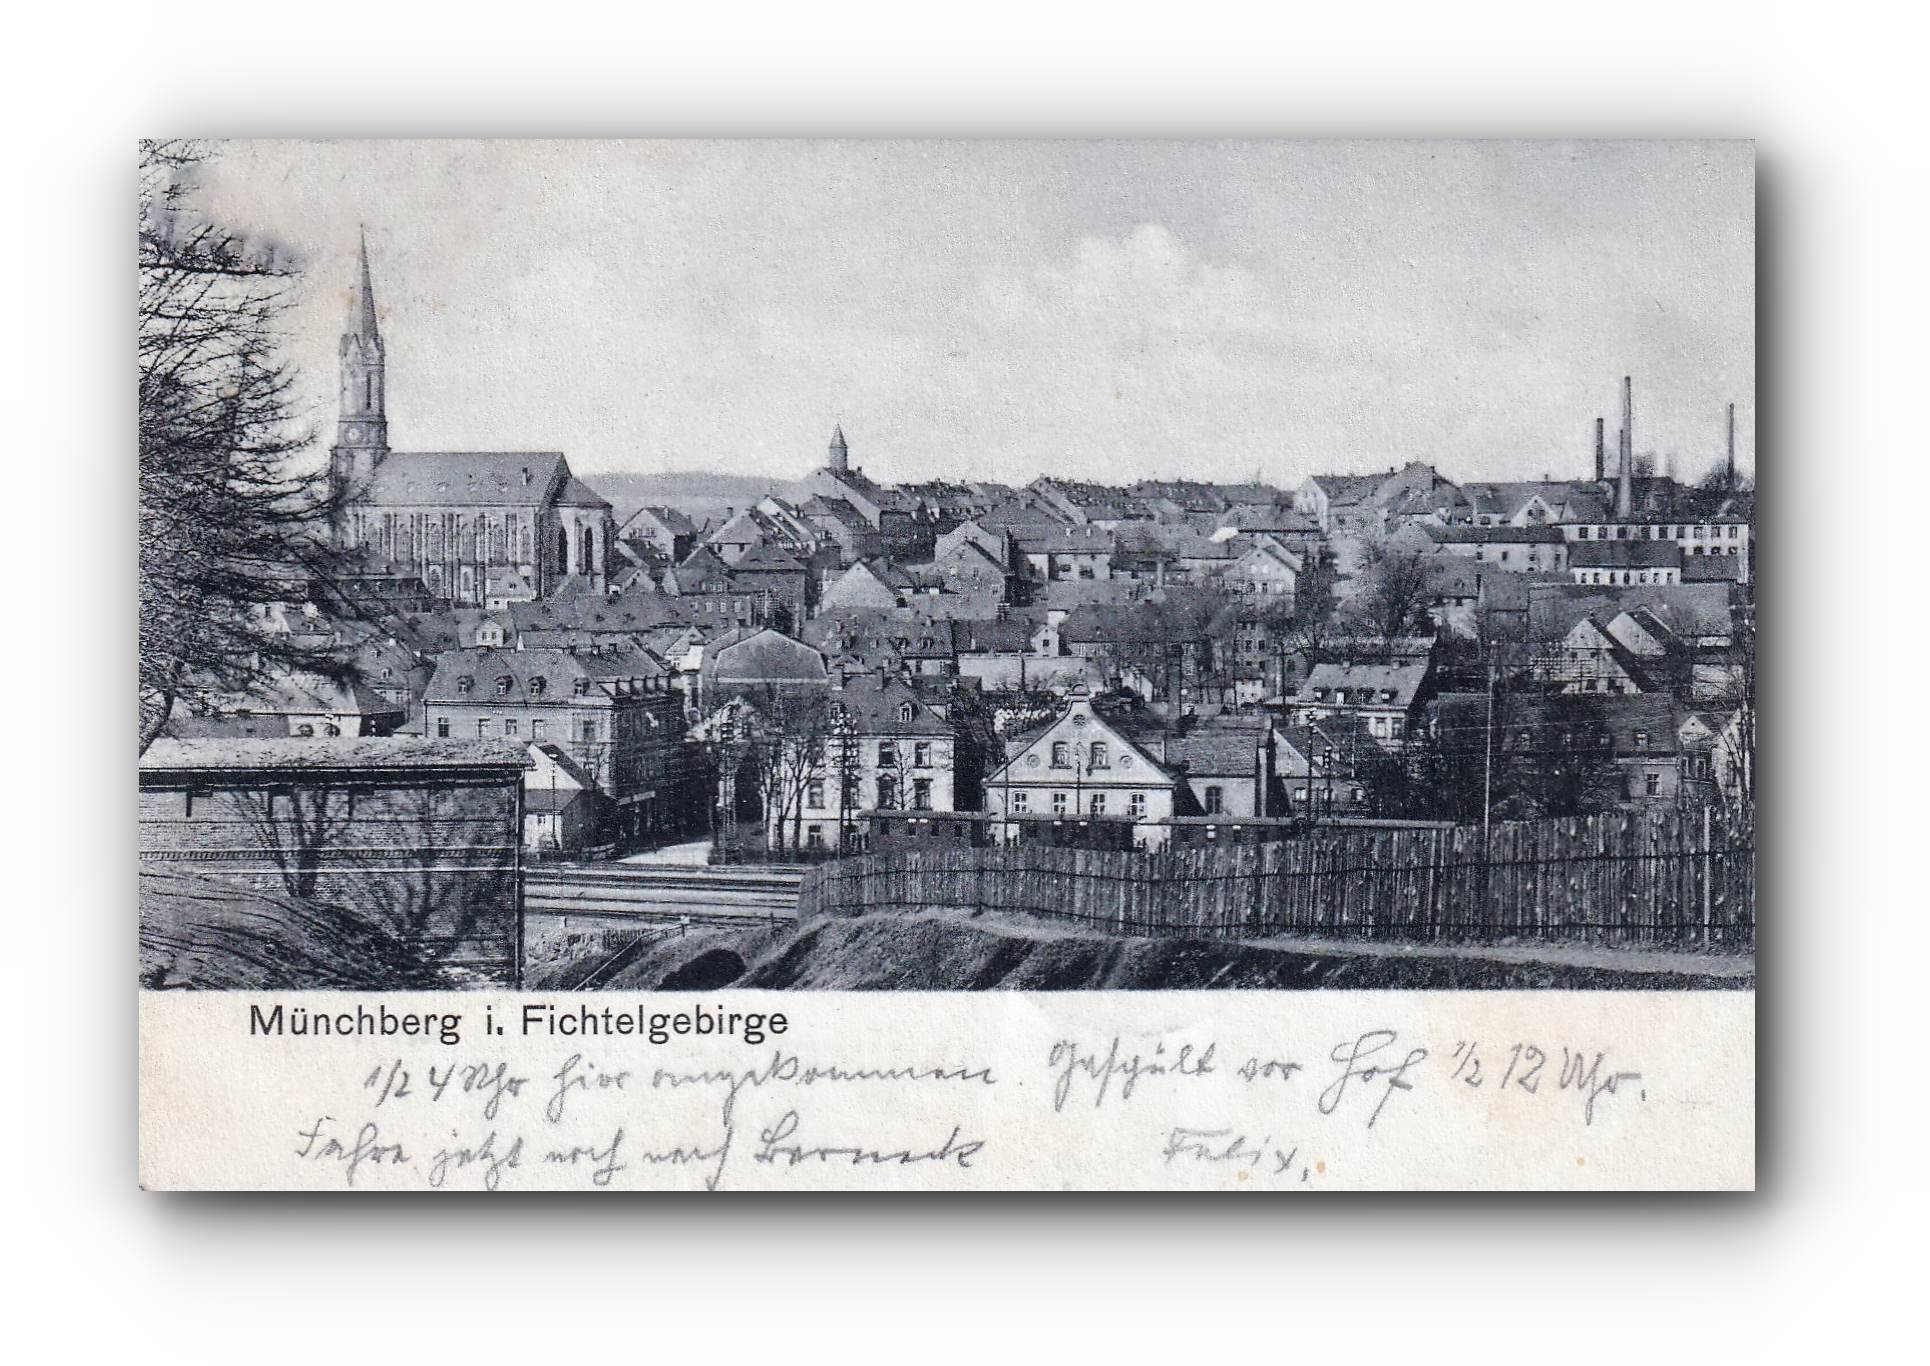 MÜNCHBERG i. Fichtelgebirge - 29.04.1904